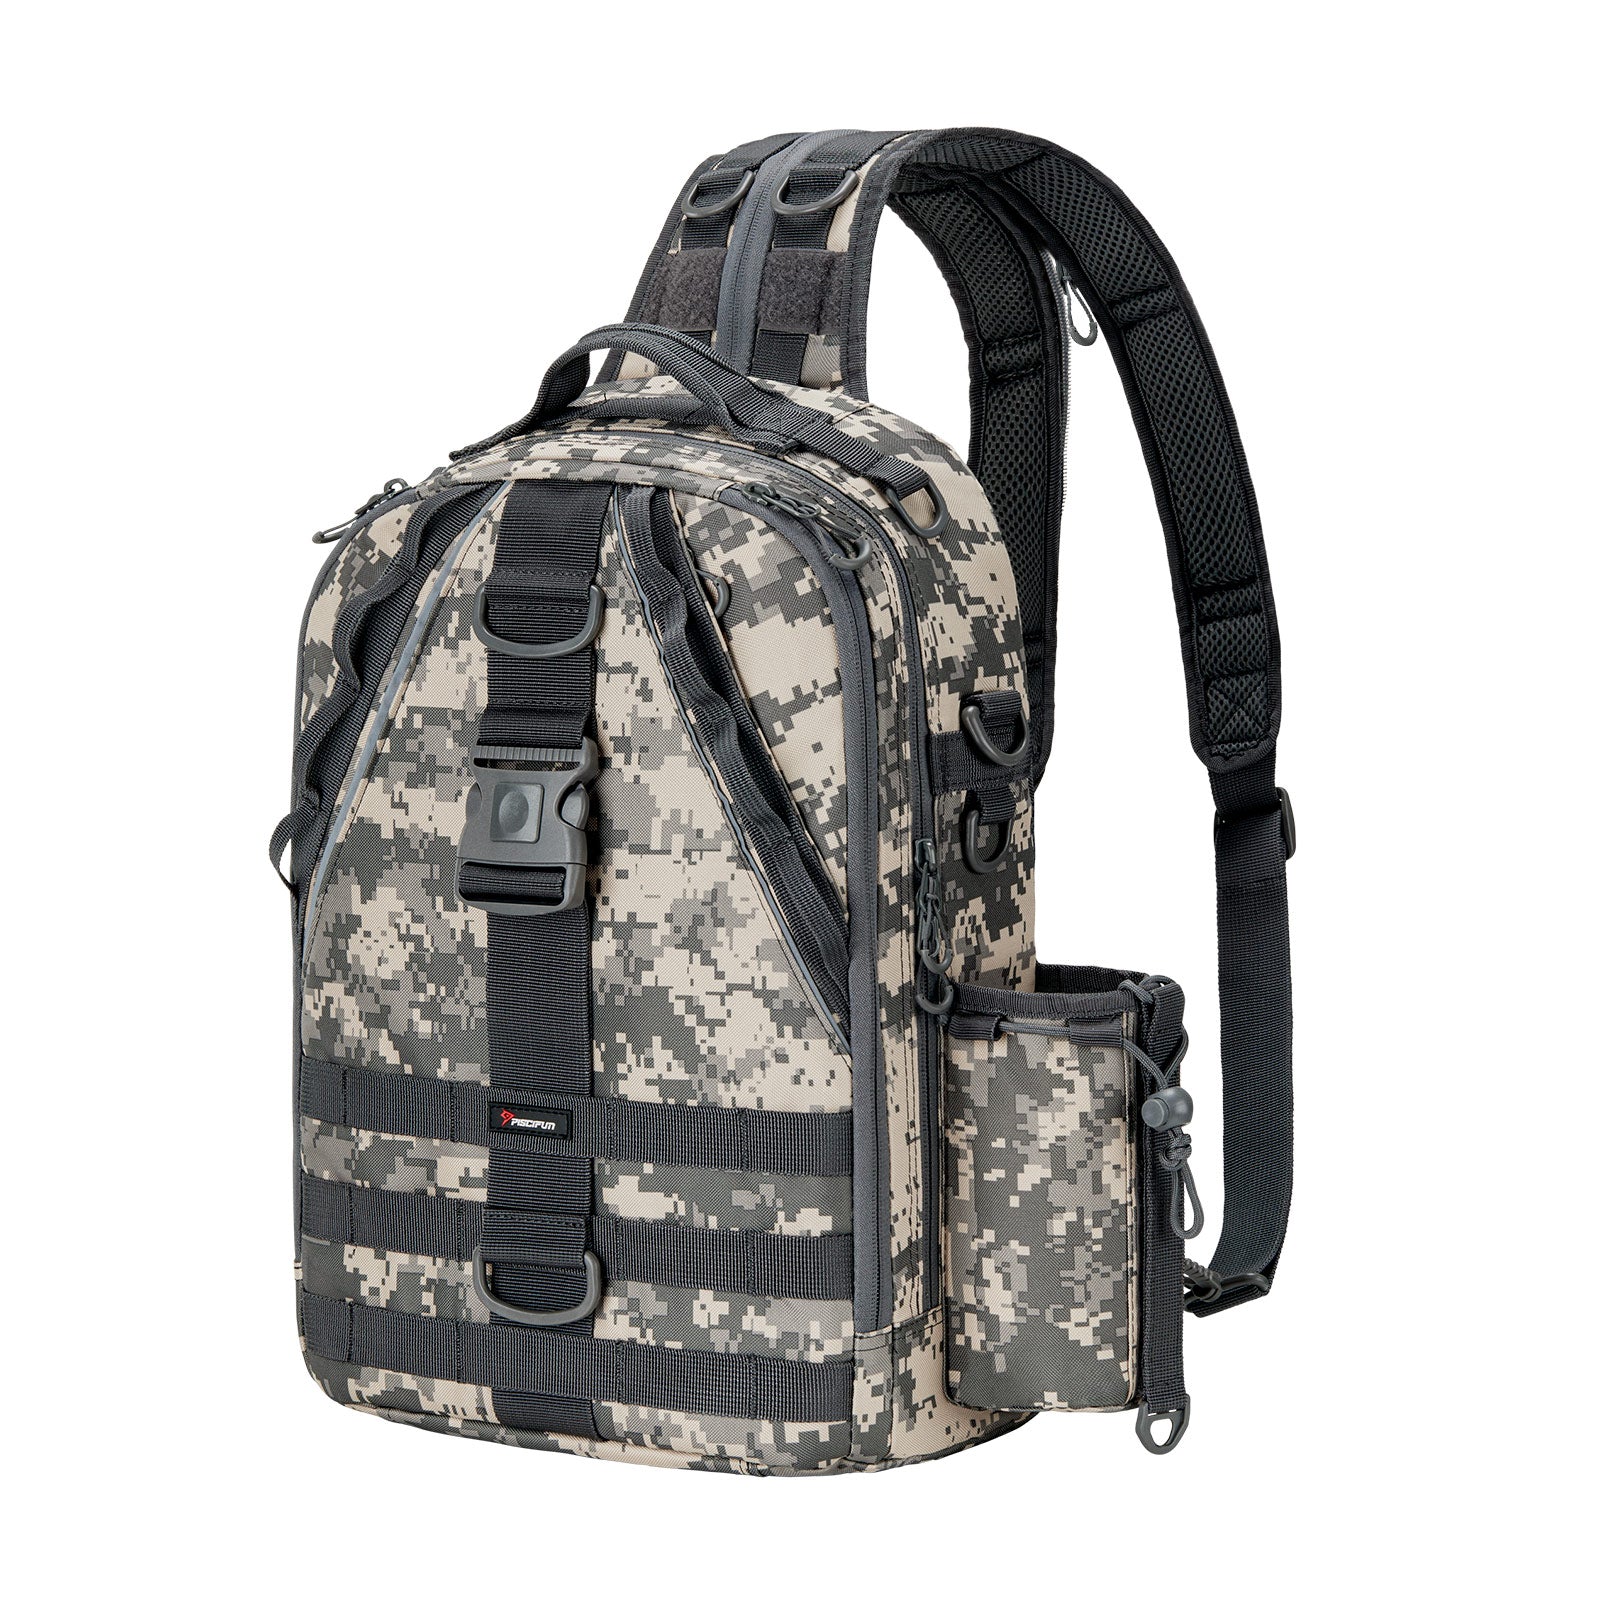 Ghosthorn Fishing Tackle Backpack Storage Bag - Outdoor Shoulder